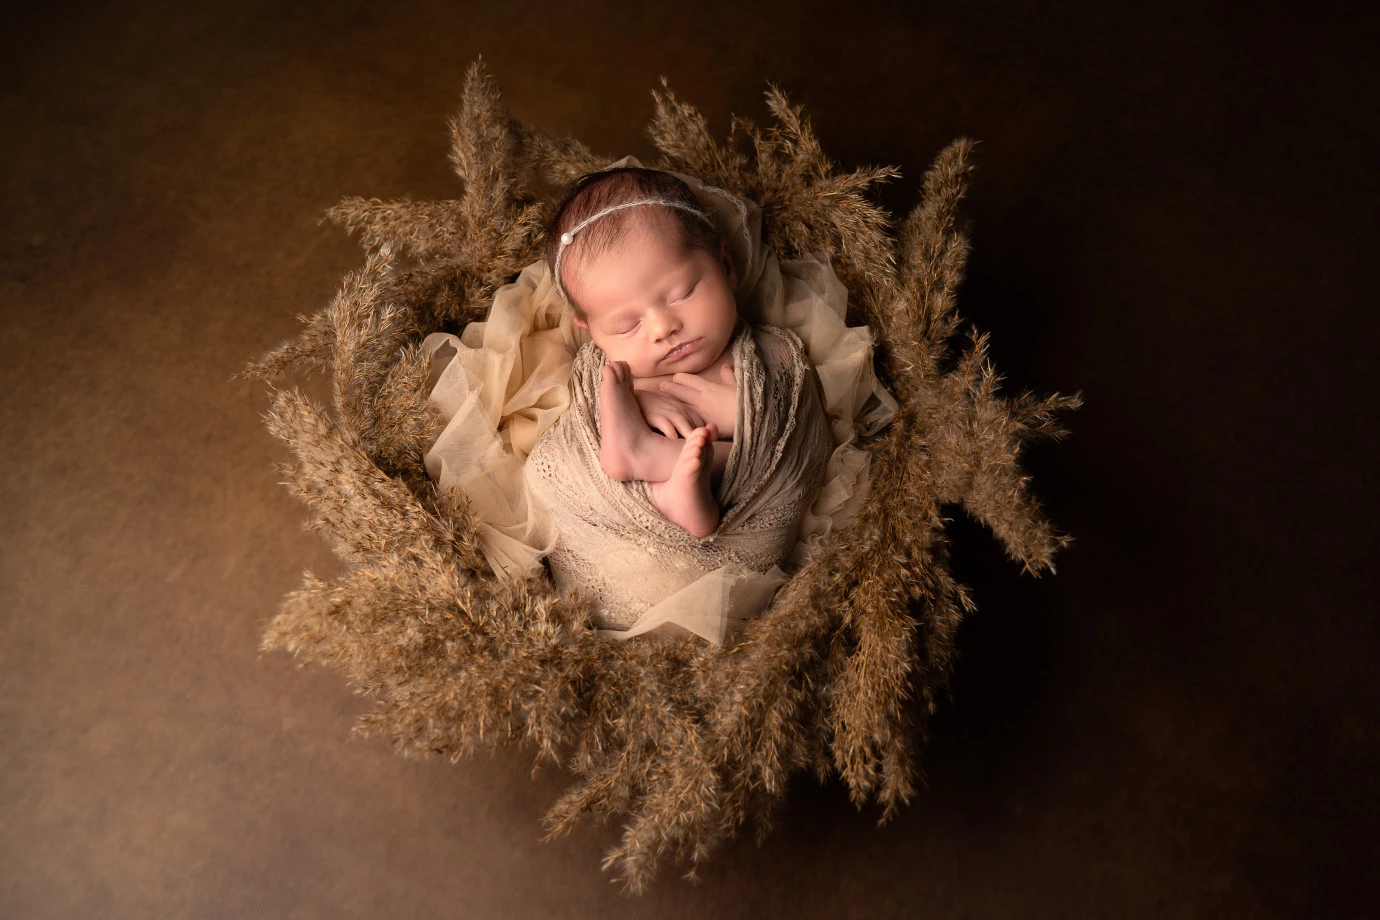 fotograf belchatow malutki-swiat-fotografia portfolio zdjecia noworodkow sesje noworodkowe niemowlę